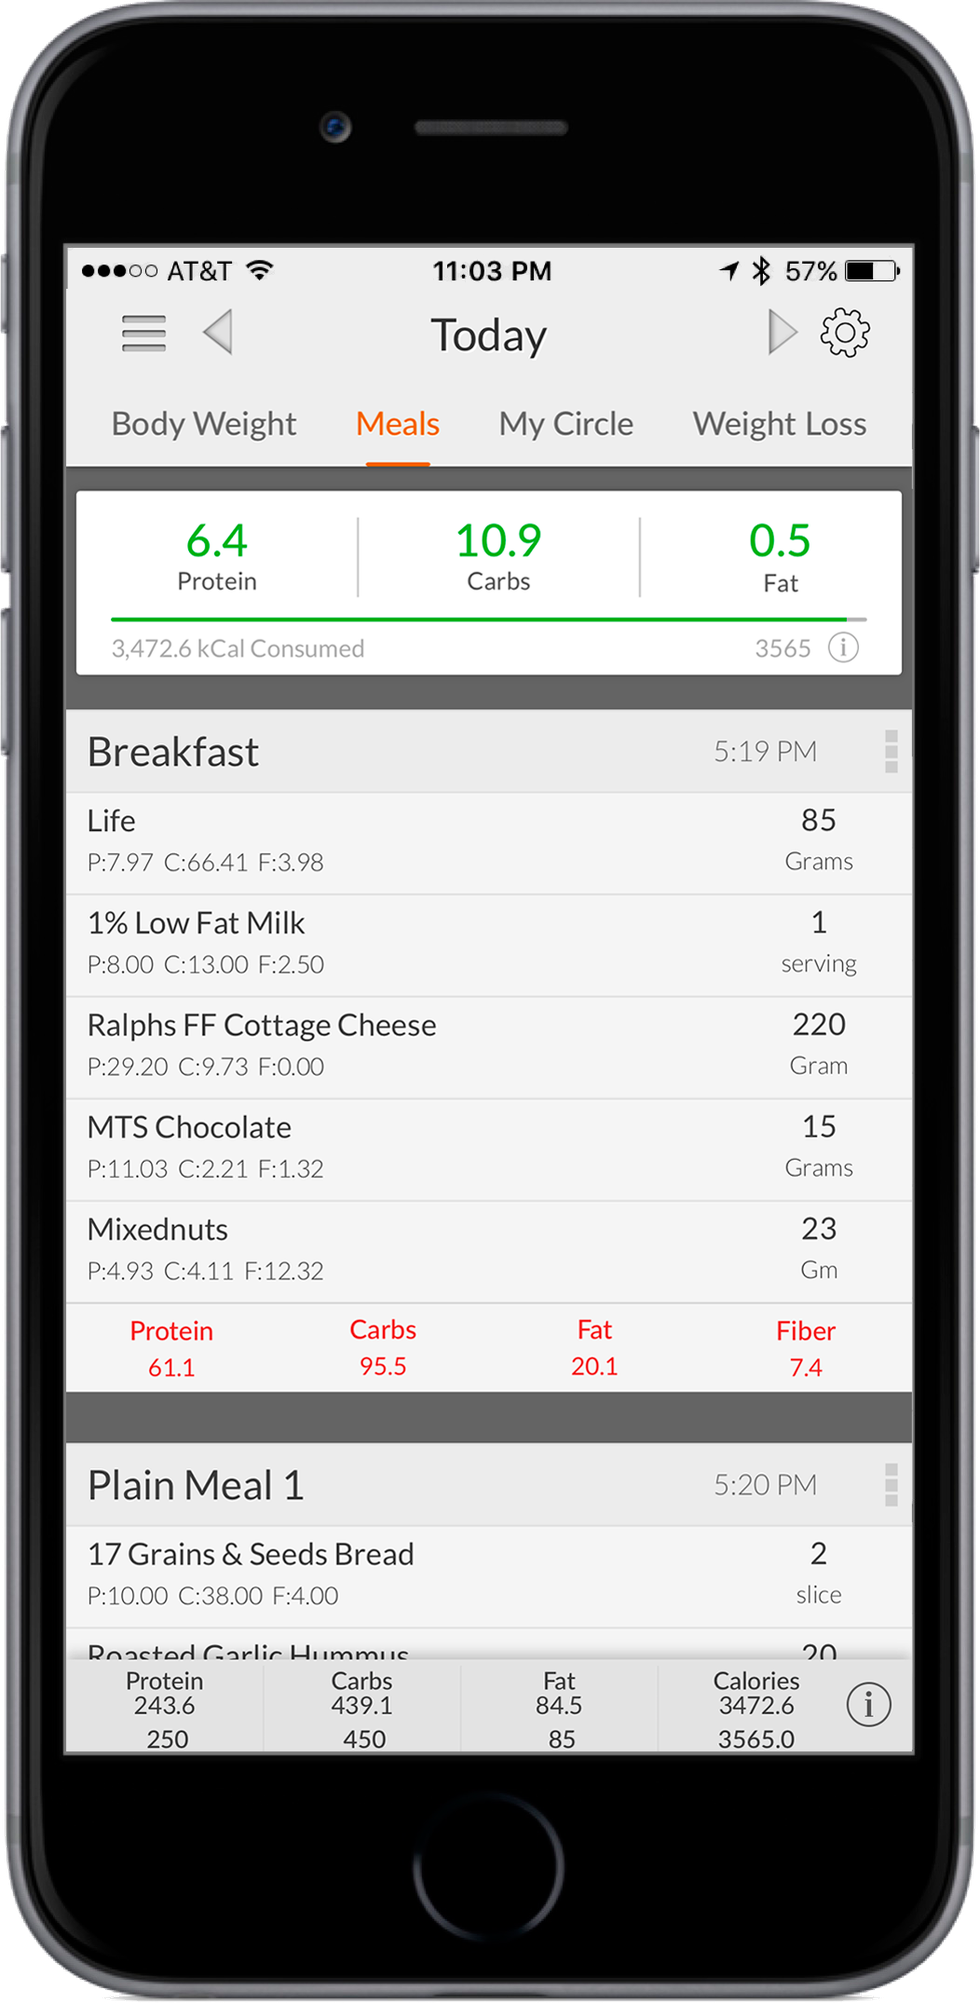 Macros App - Calorie Counter